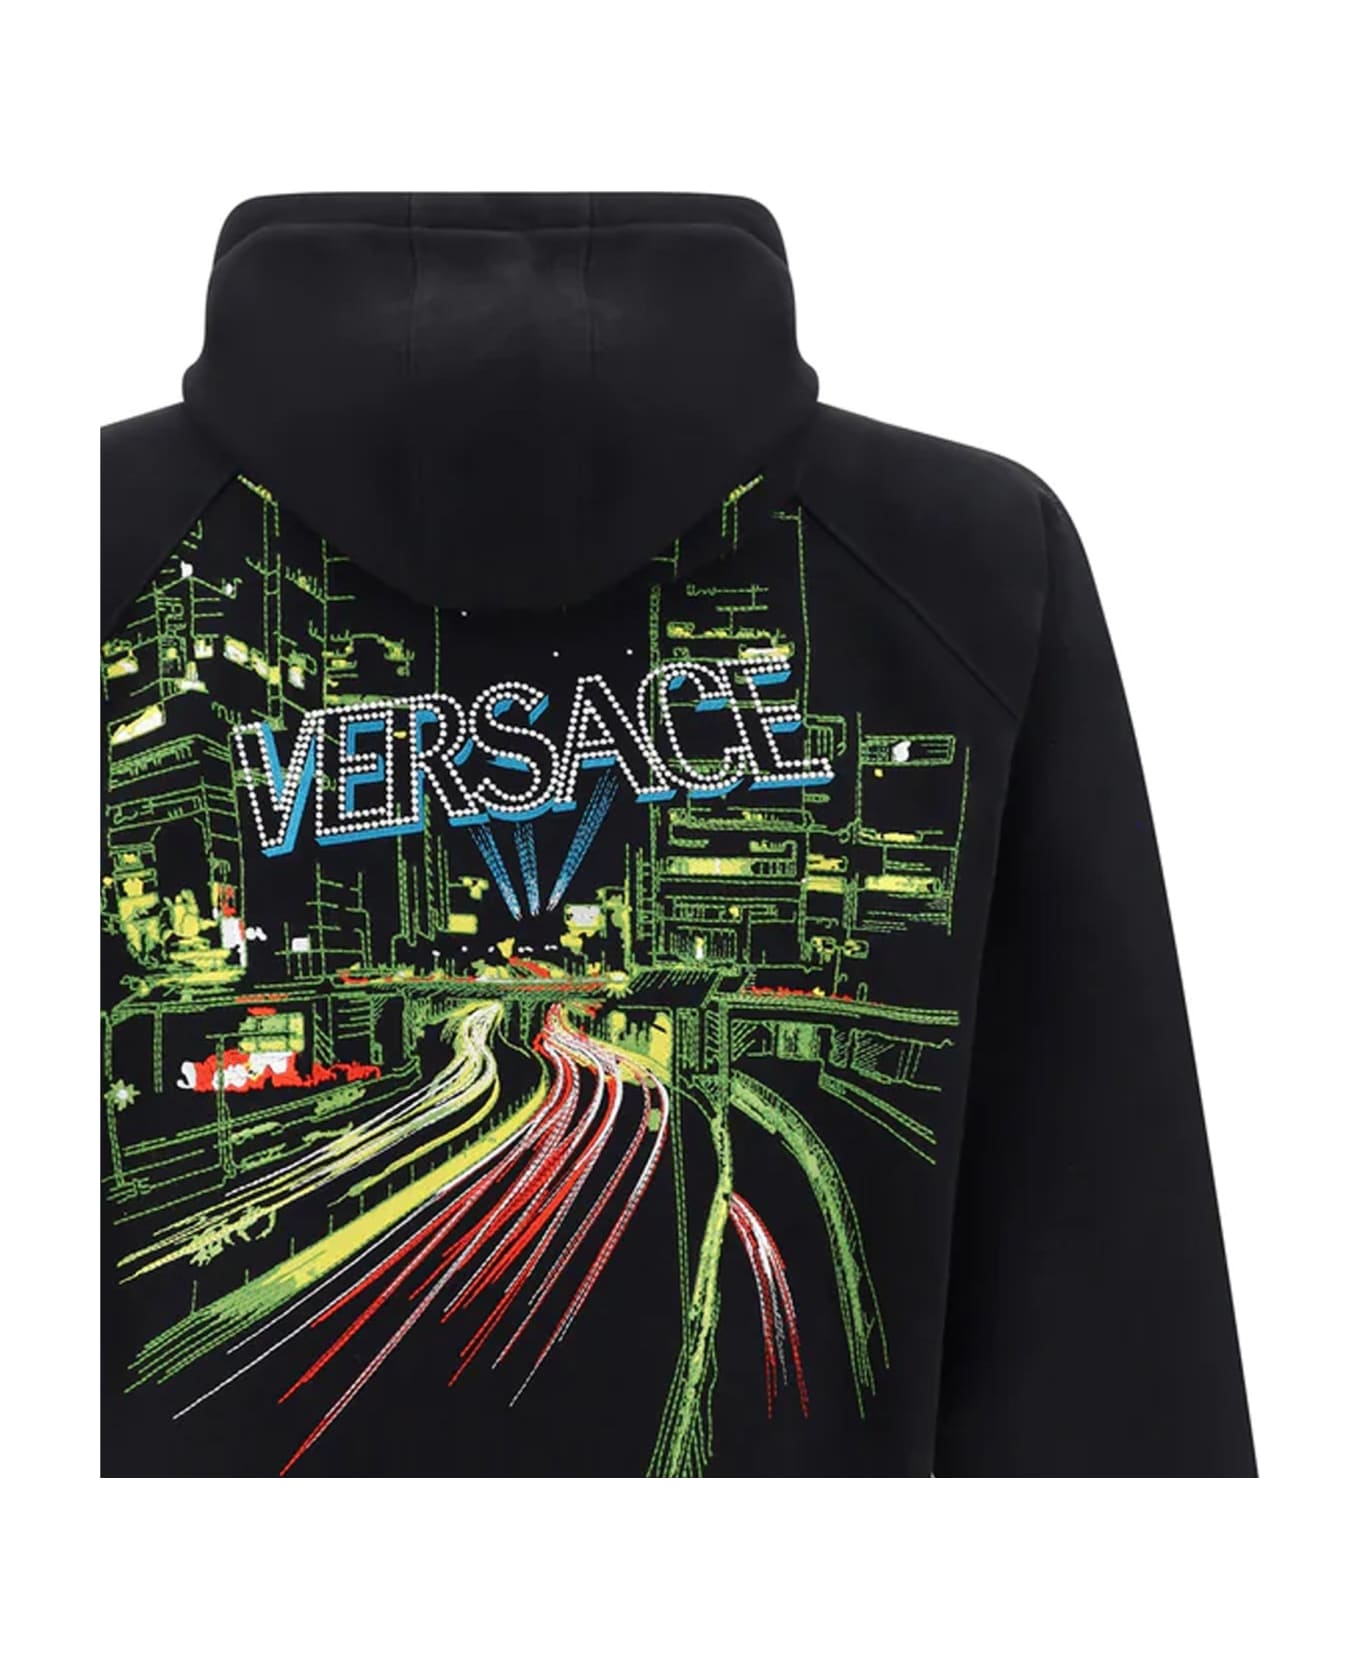 Versace Hooded Sweatshirt - Black